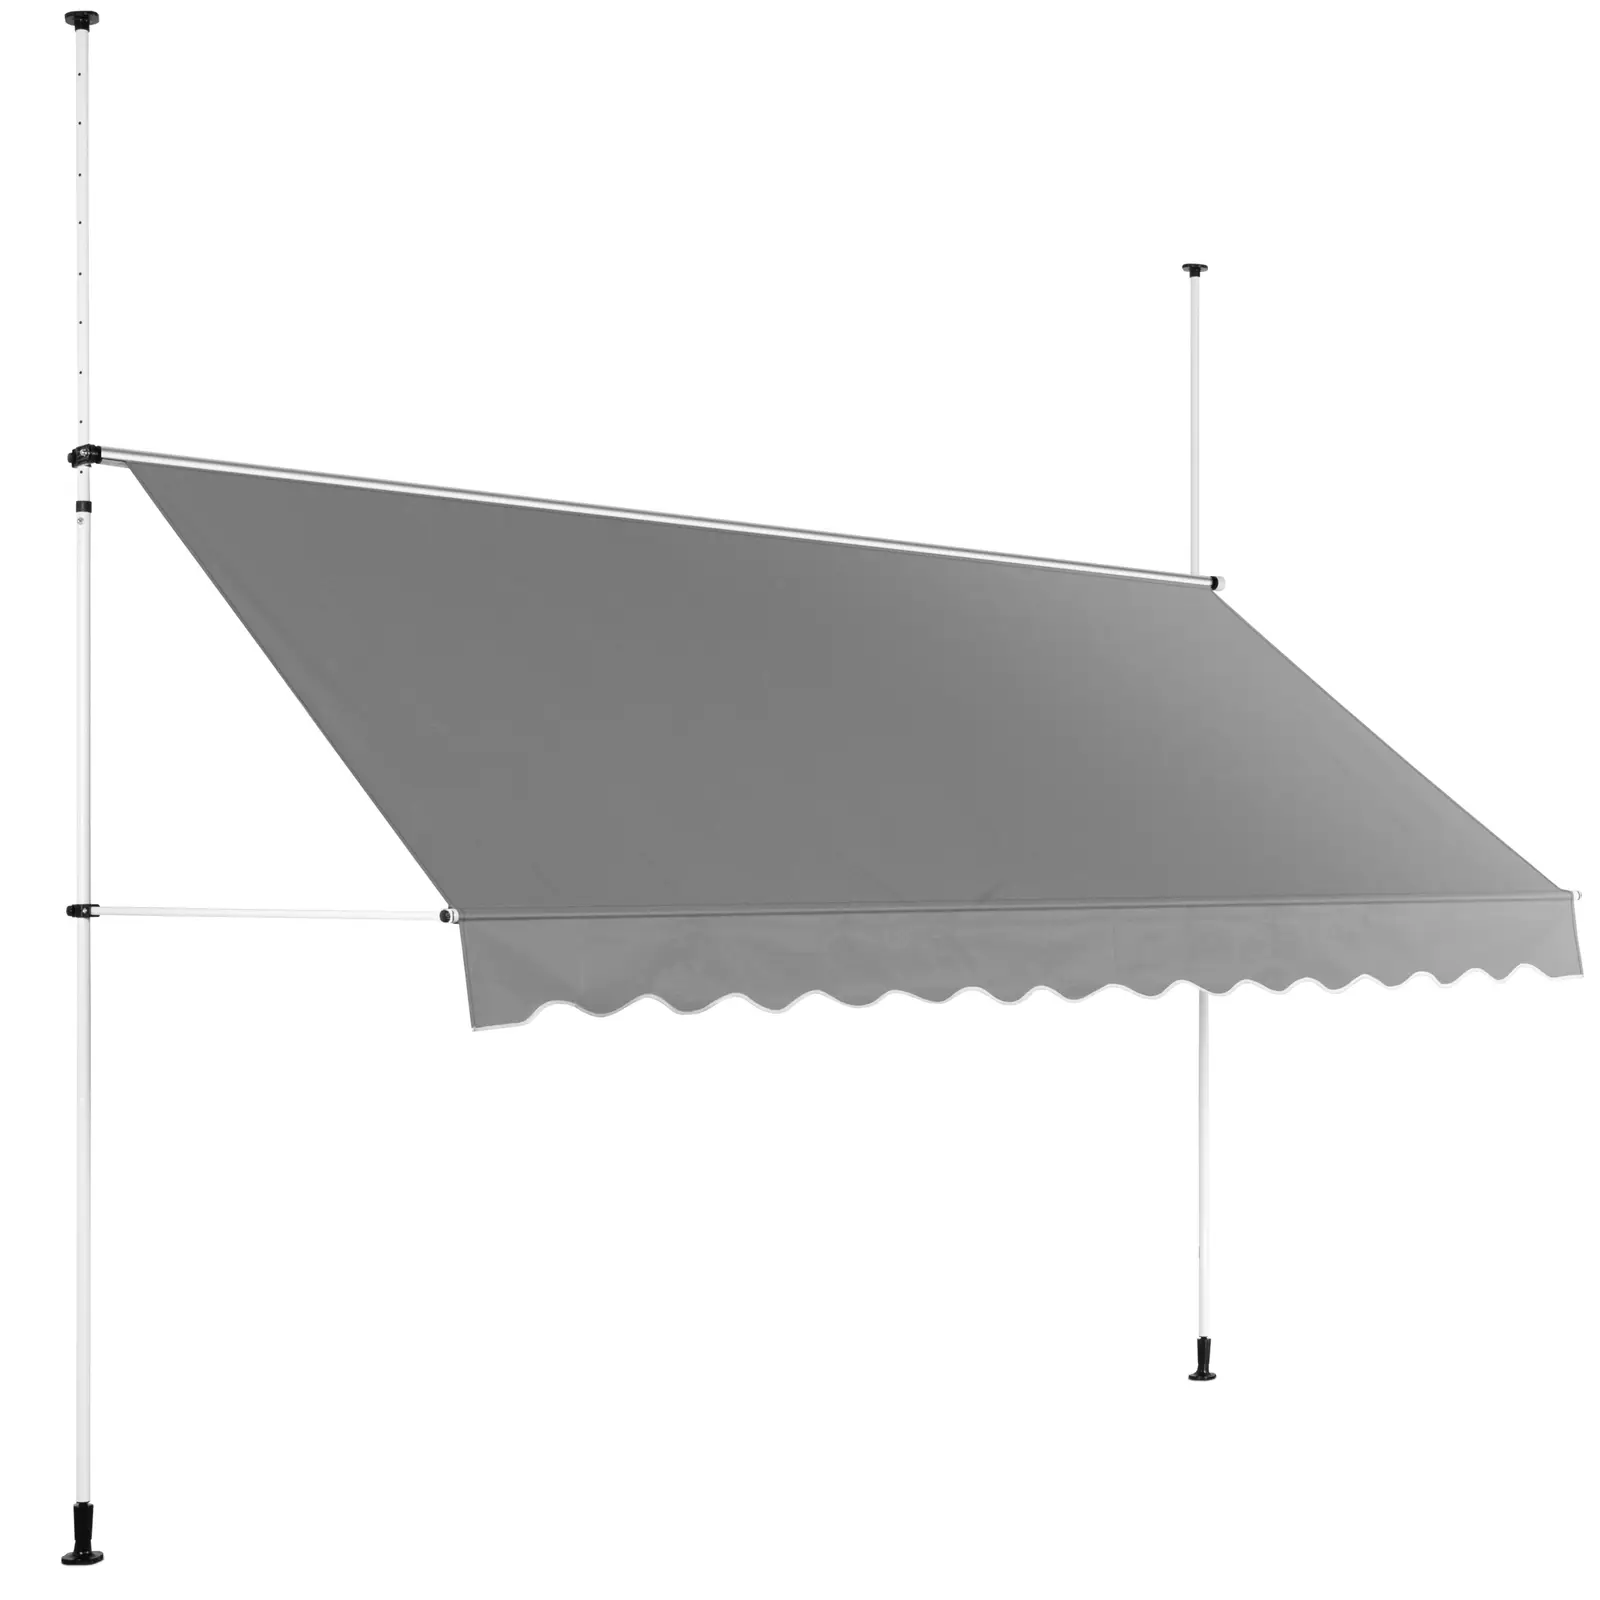 Ročna tenda - 2 - 3,1 m - 350 x 120 cm - odporna na UV žarke - antracitno siva / bela